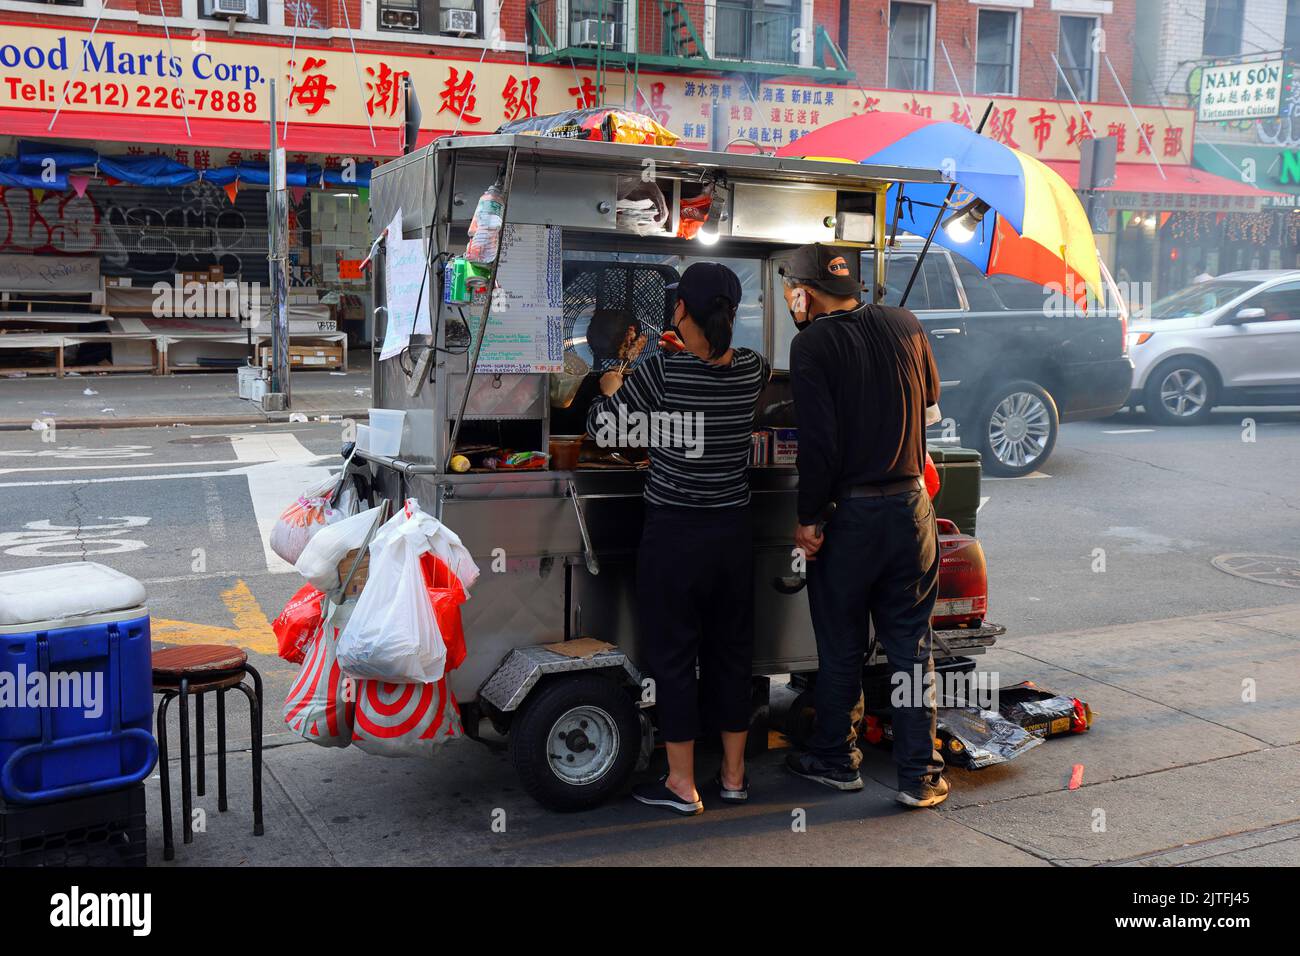 Grand St Skewer Cart, Corner of Grand and Chrystie STS', New York. Un panier alimentaire servant des brochettes grillées dans le quartier chinois de Manhattan. Banque D'Images